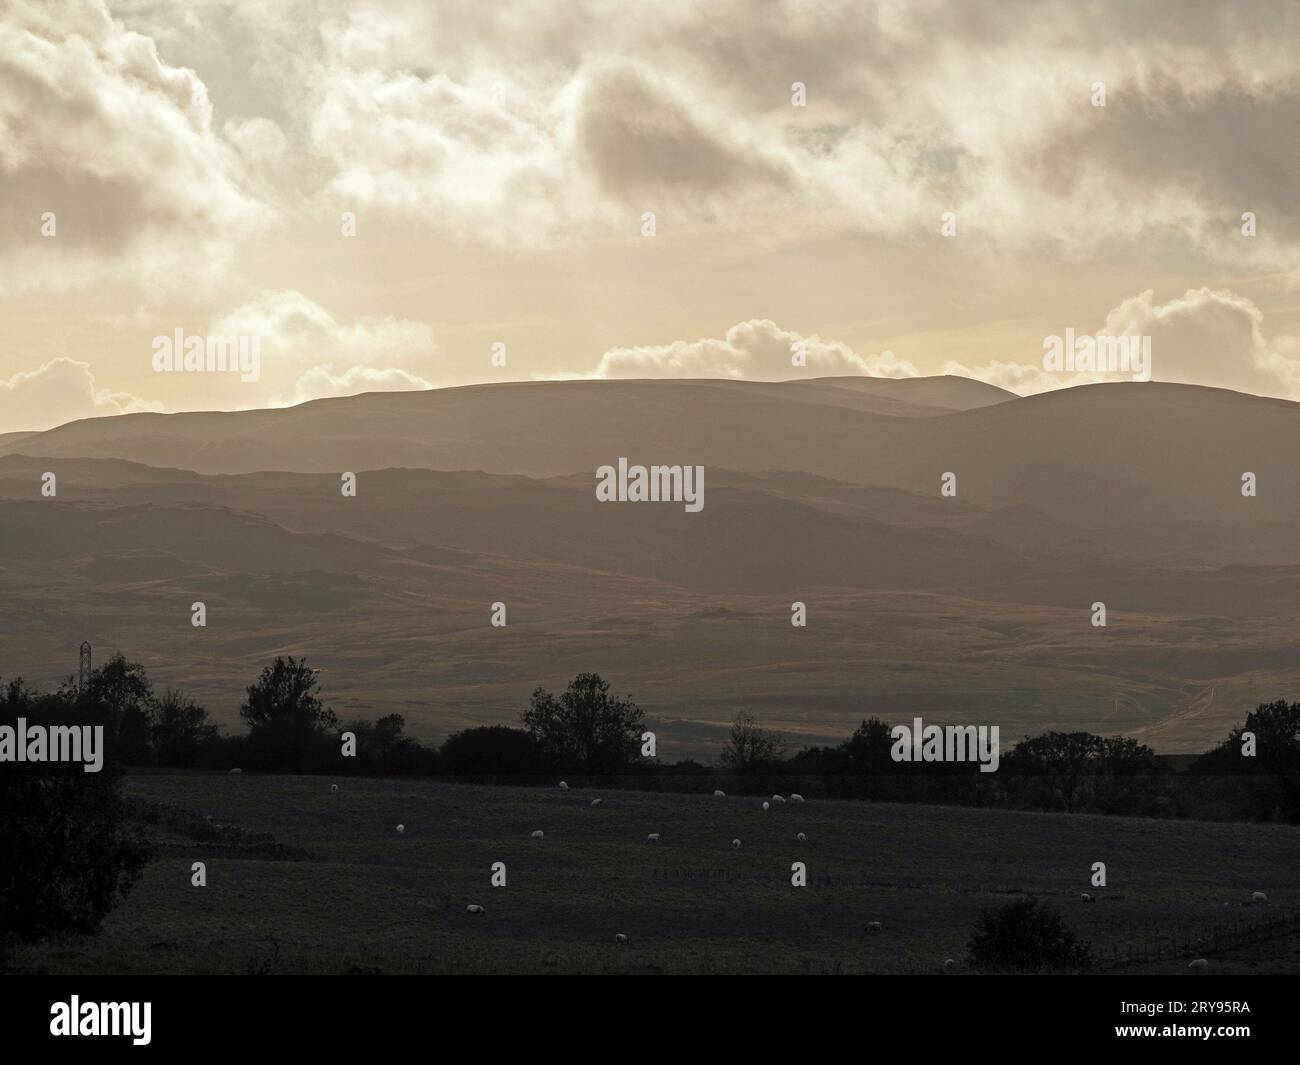 Lake District Hügel in stimmungsvollem Licht mit weidenden Schafen im fernen Vordergrund und High Street unter hinterleuchteten Wolken - Cumbria, England, Großbritannien Stockfoto